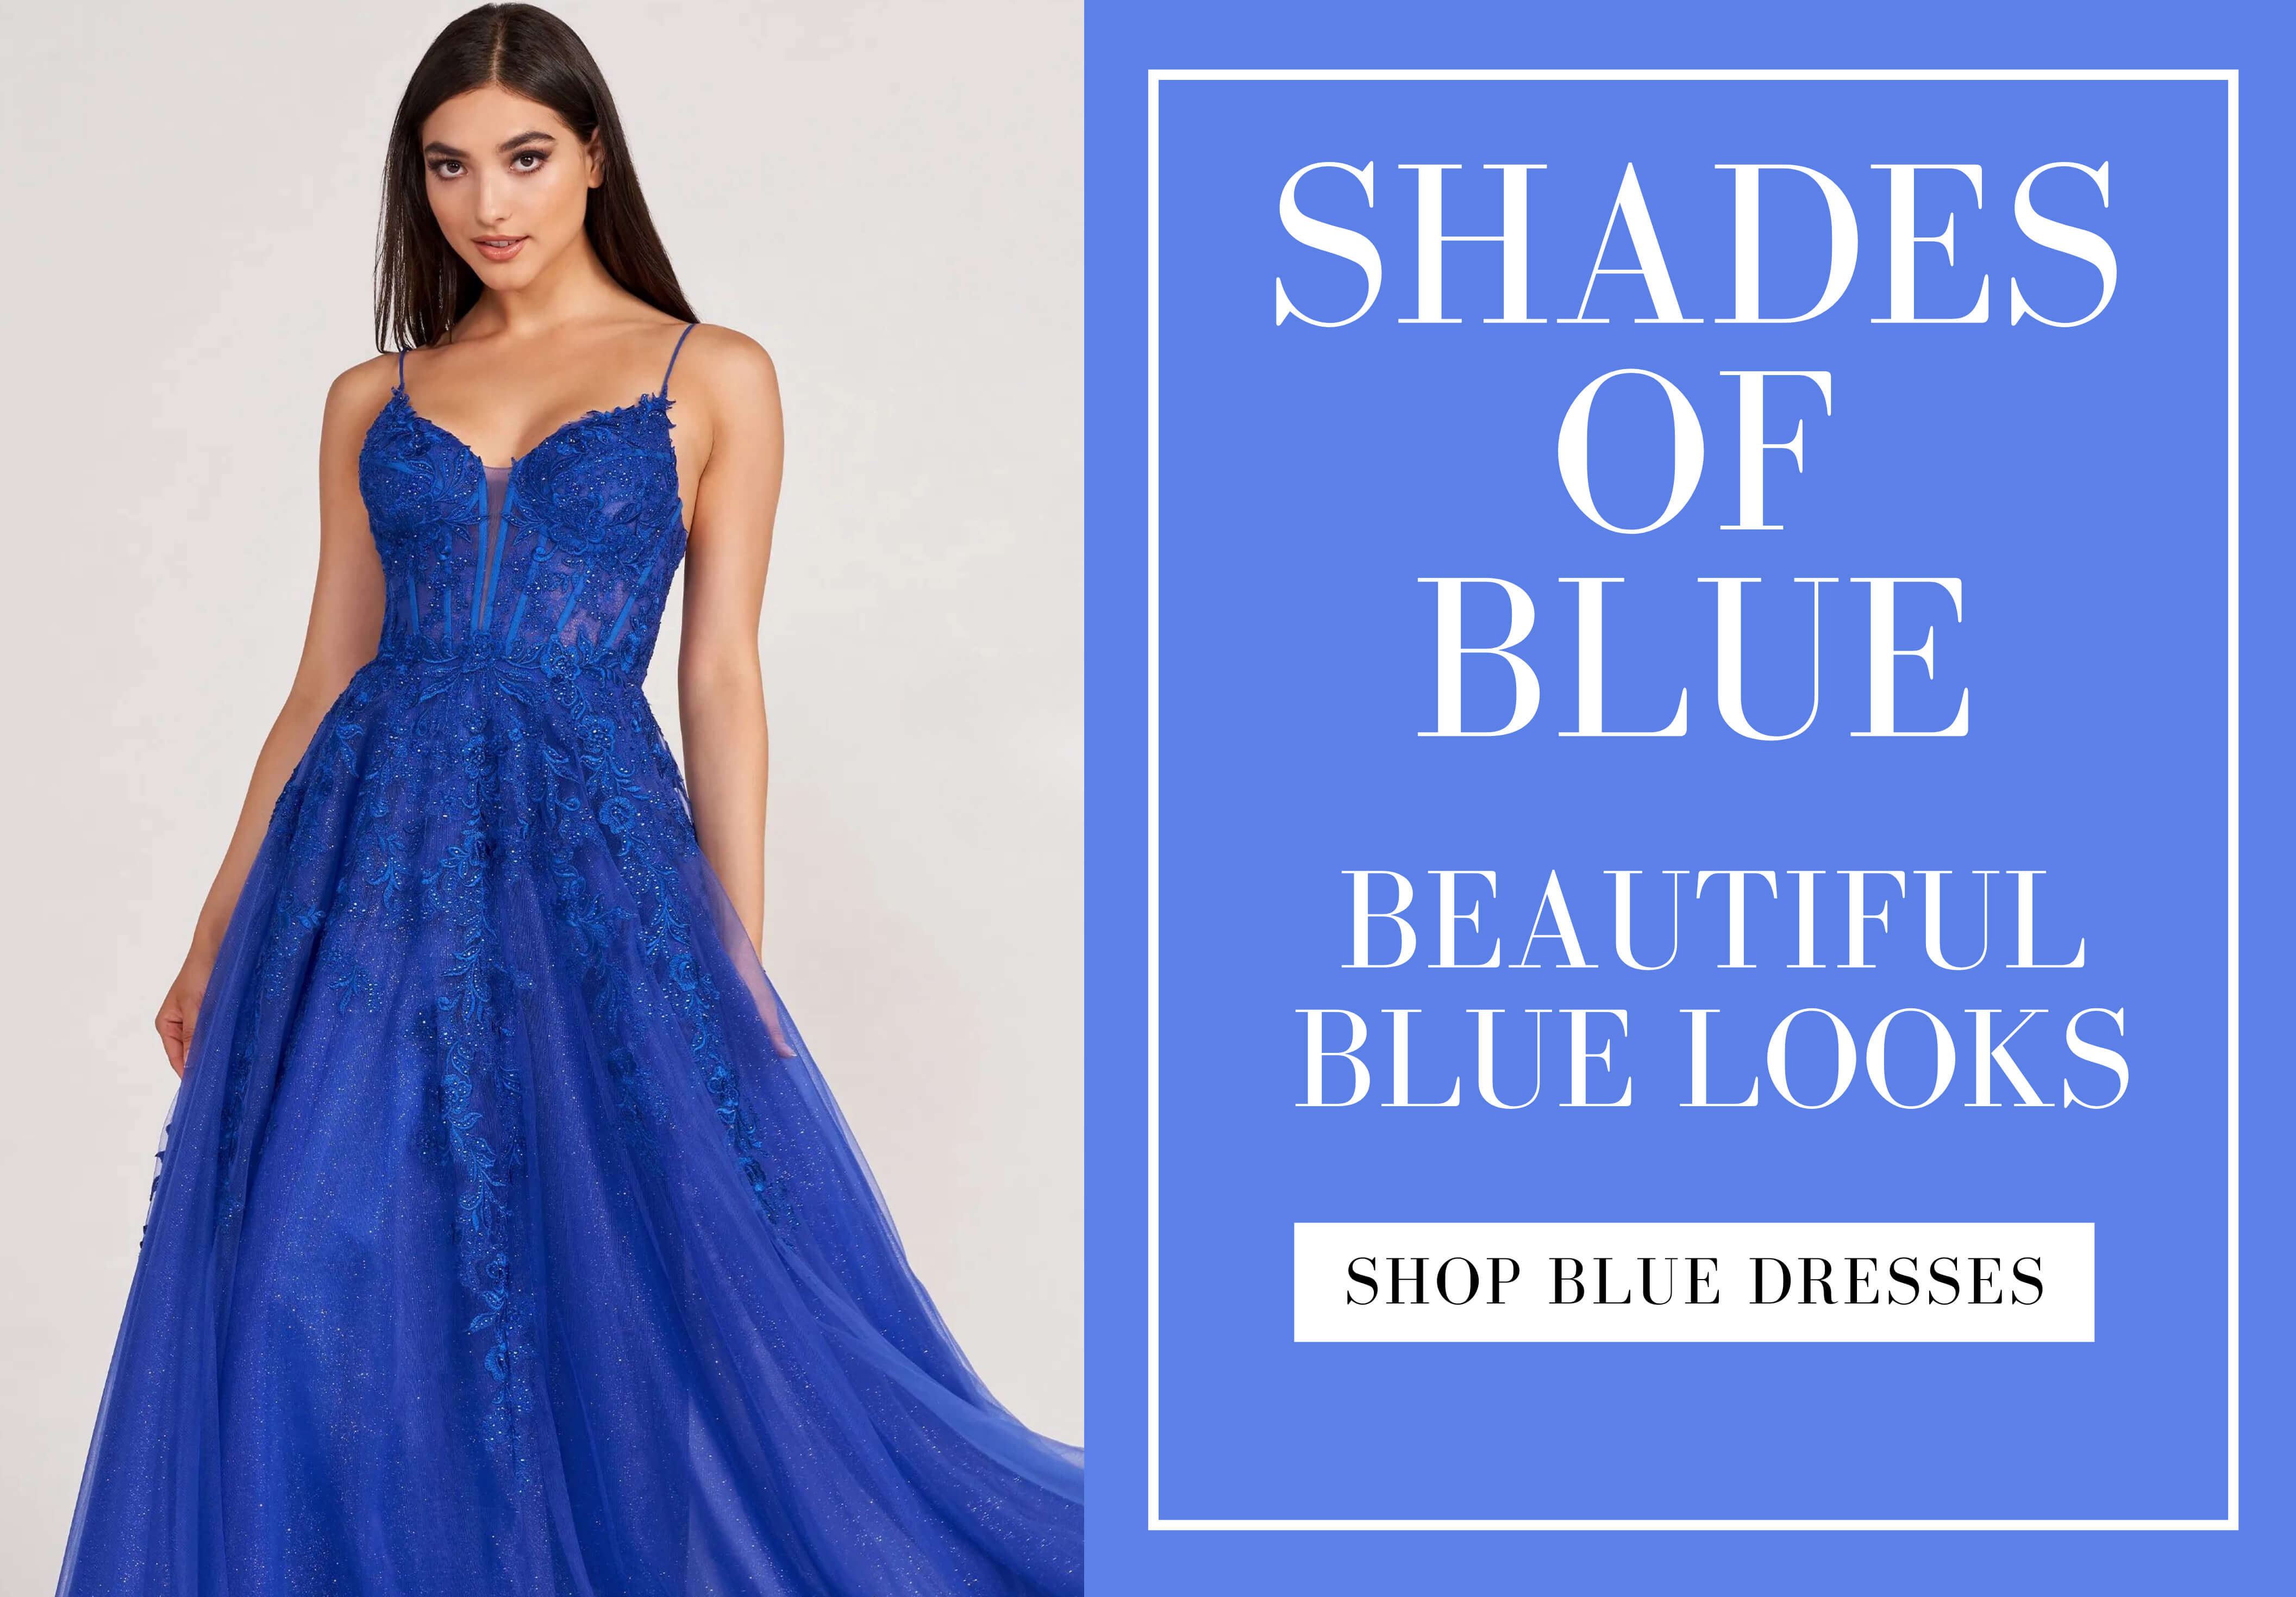 Shades of blue dresses. Desktop Image